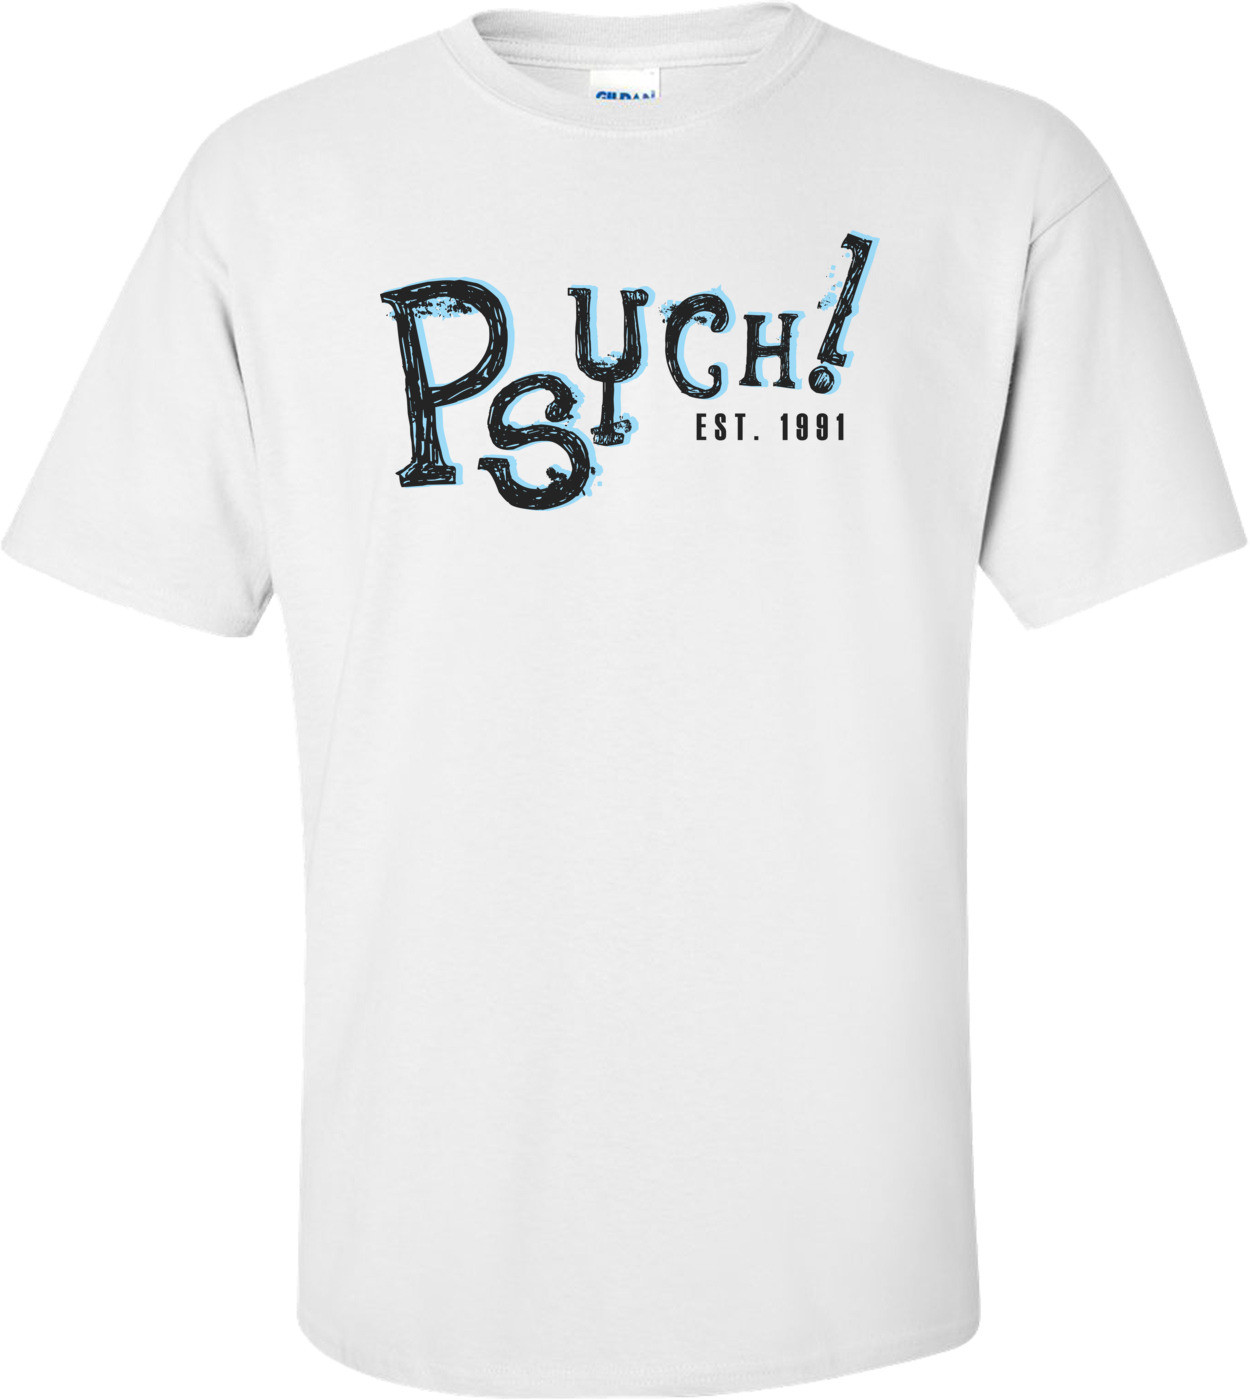 Psych Est. 1991 T-shirt